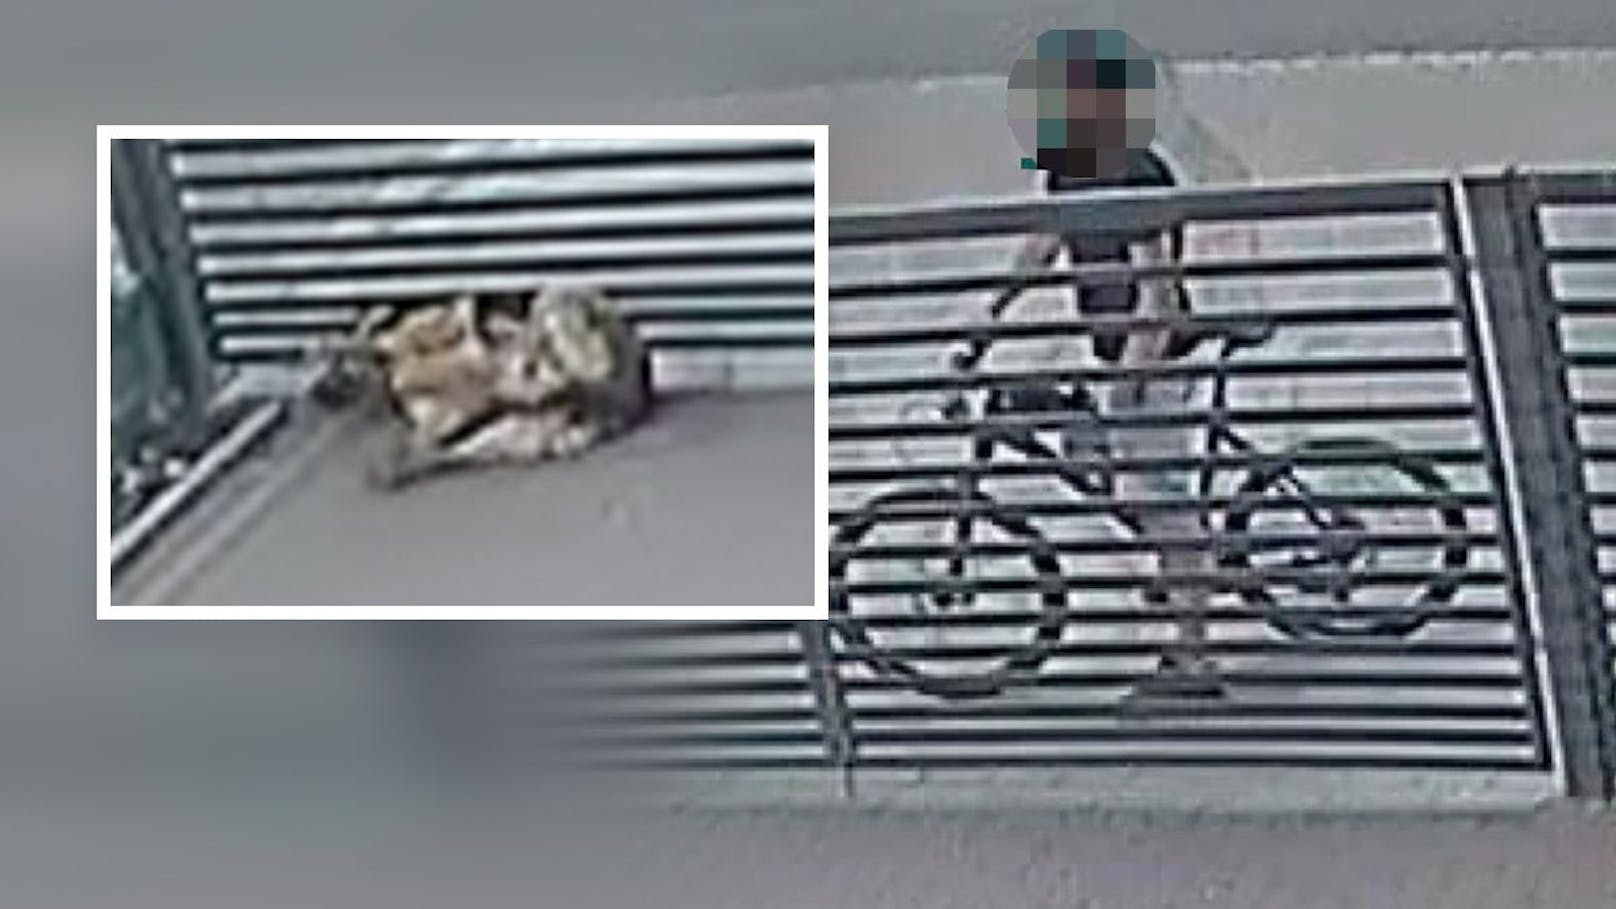 Eine Überwachungskamera filmte den vorerst unbekannten Radler bei seiner unfassbaren Tat.